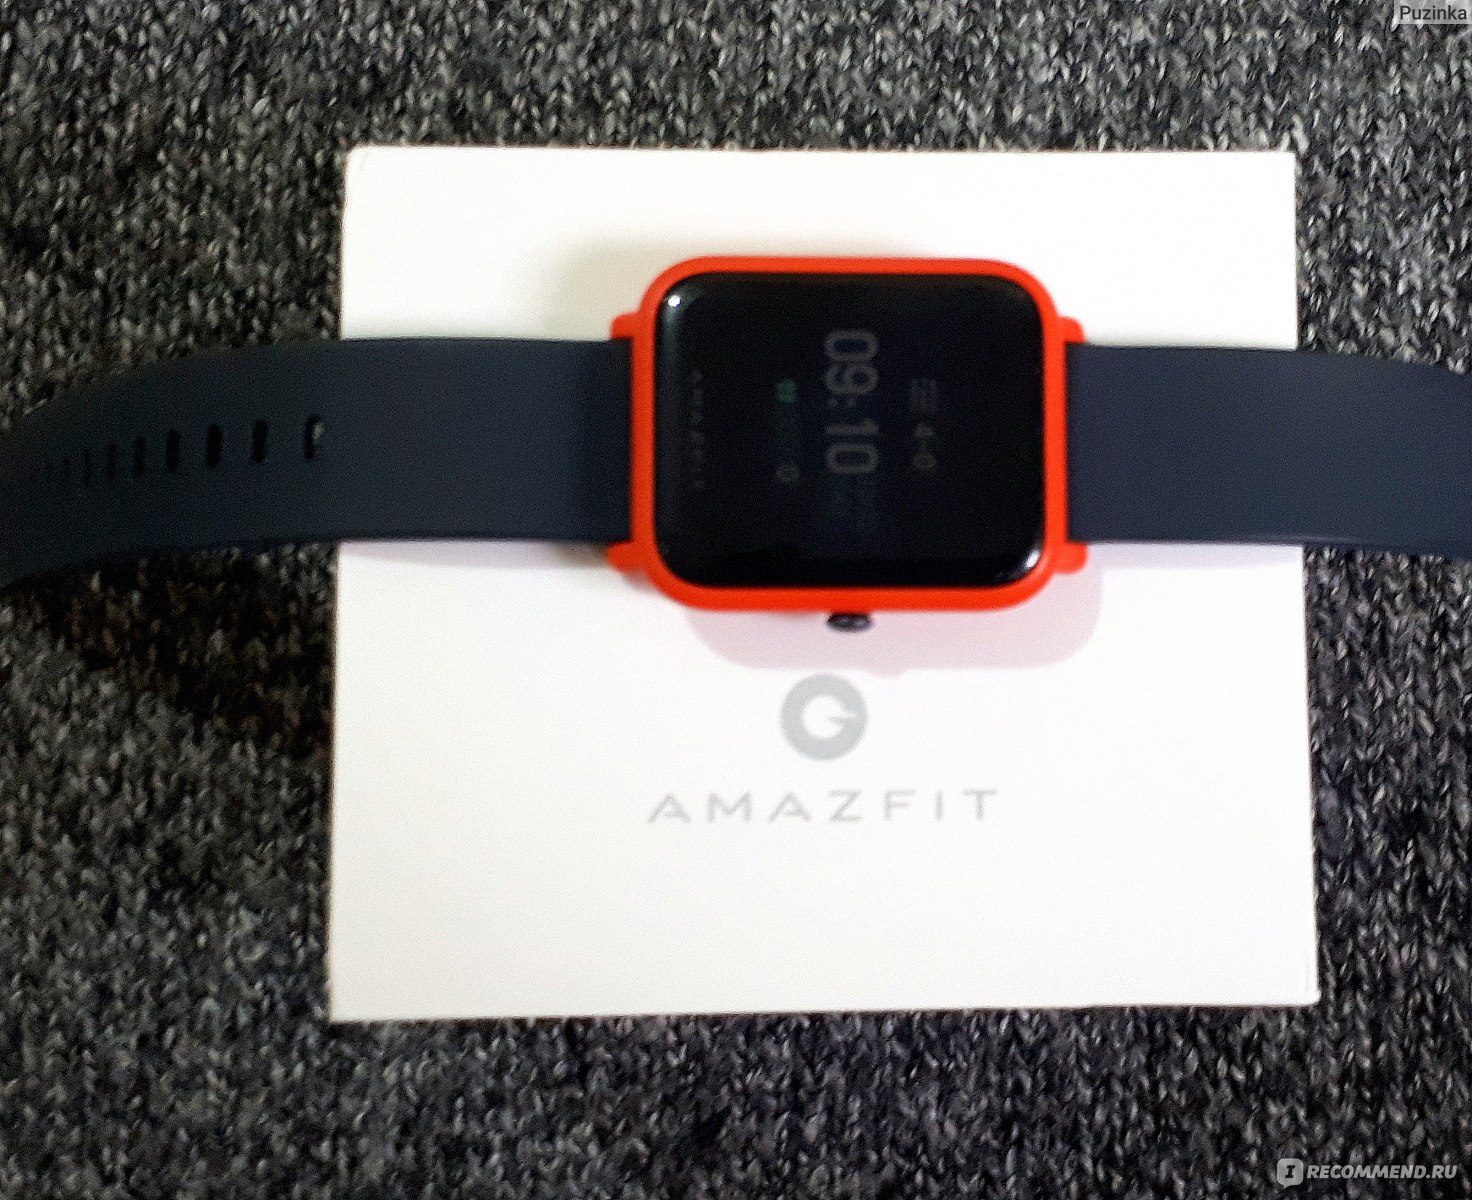 Обзор умных часов amazfit bip. вероятный конкурент pebble / блог компании gearbest.com / хабр